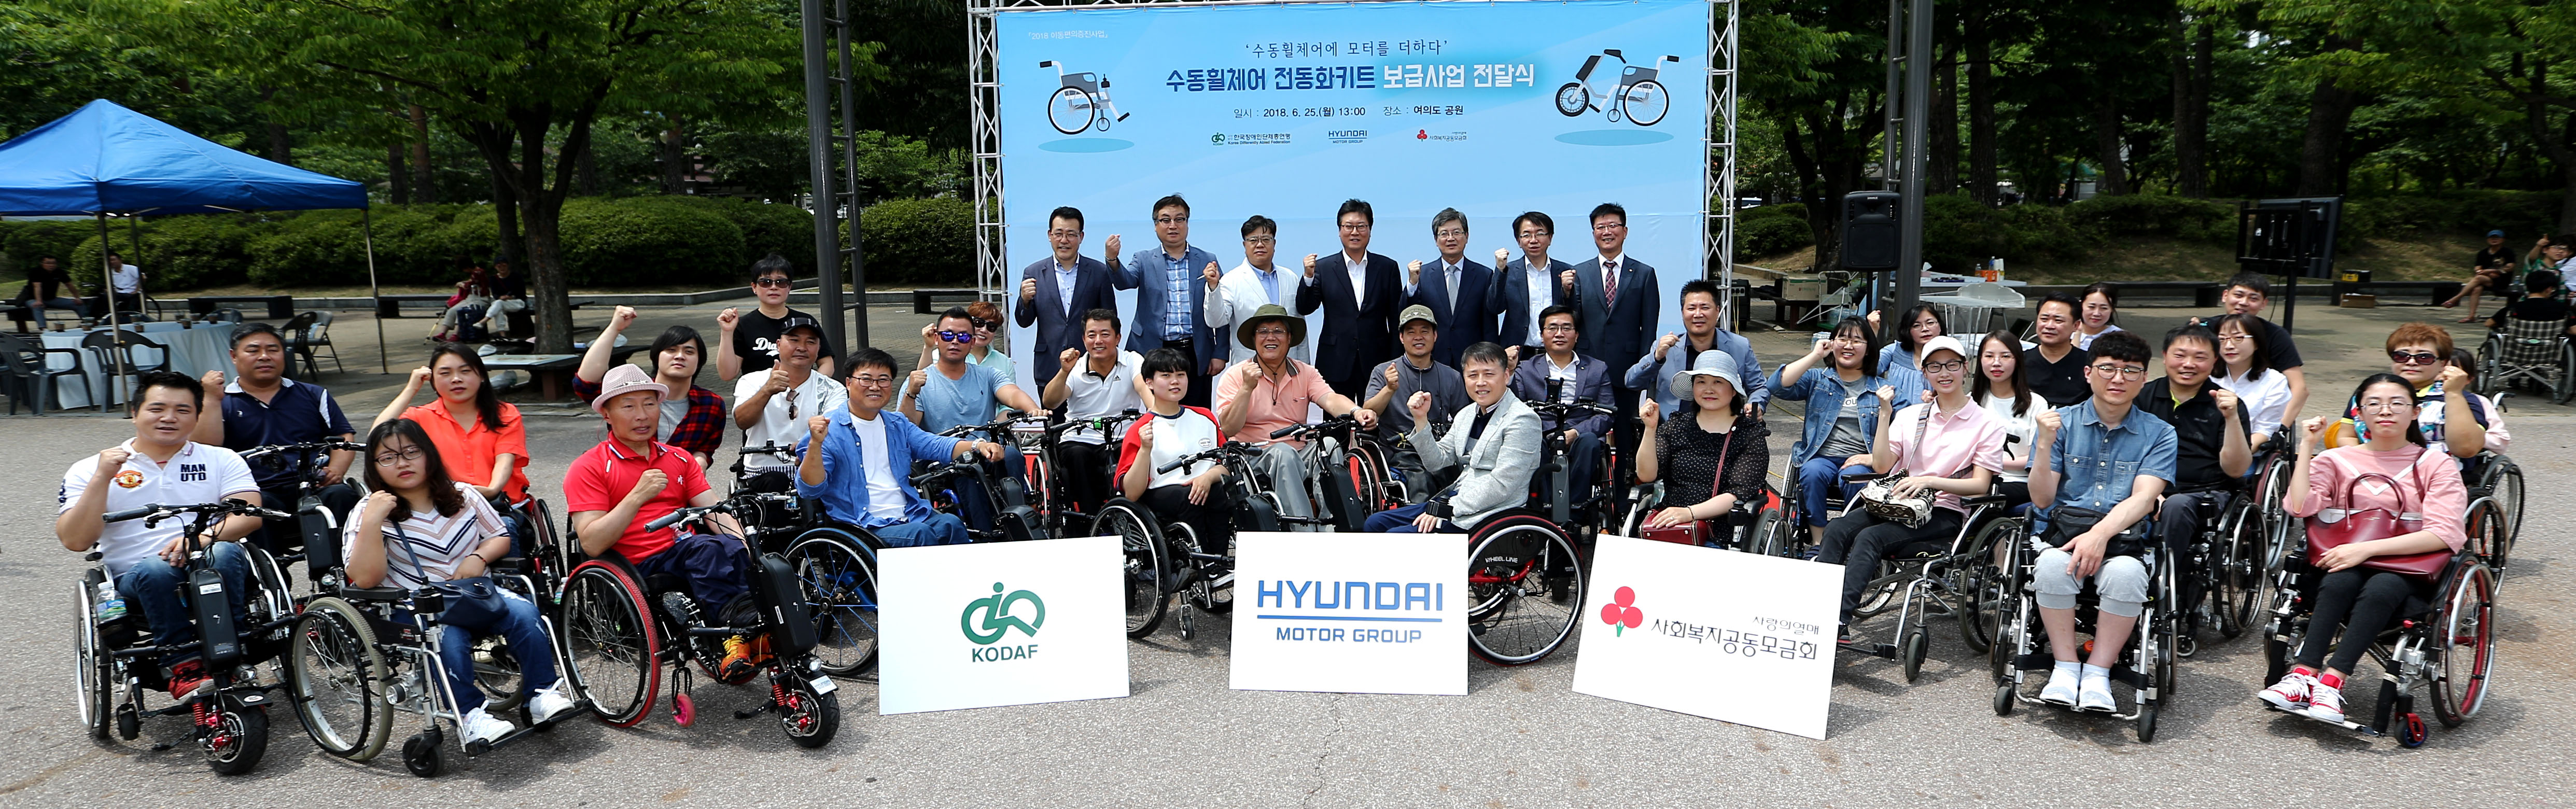 지난 6월 열린 ‘장애인 수동 휠체어 전동화키트 전달식’에서 현대차그룹 및 한국장애인단체총연맹 관계자, 장애인 등 참석자들이 기념 촬영을 하고 있다.  현대차그룹 제공